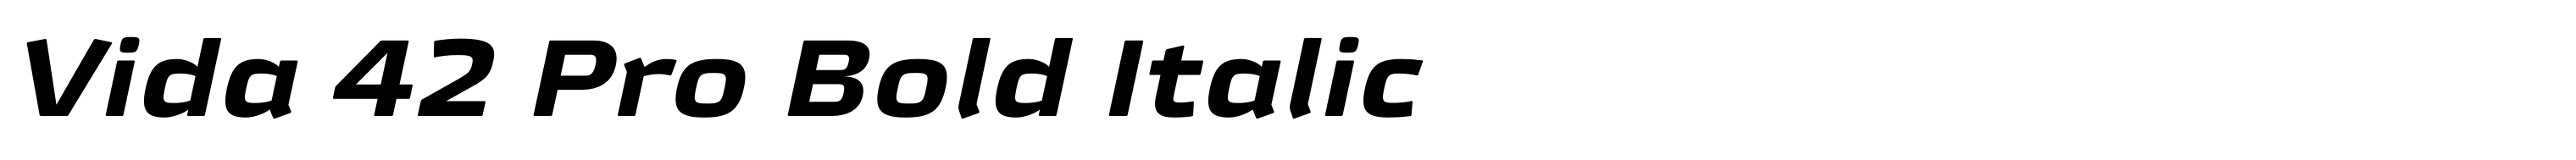 Vida 42 Pro Bold Italic